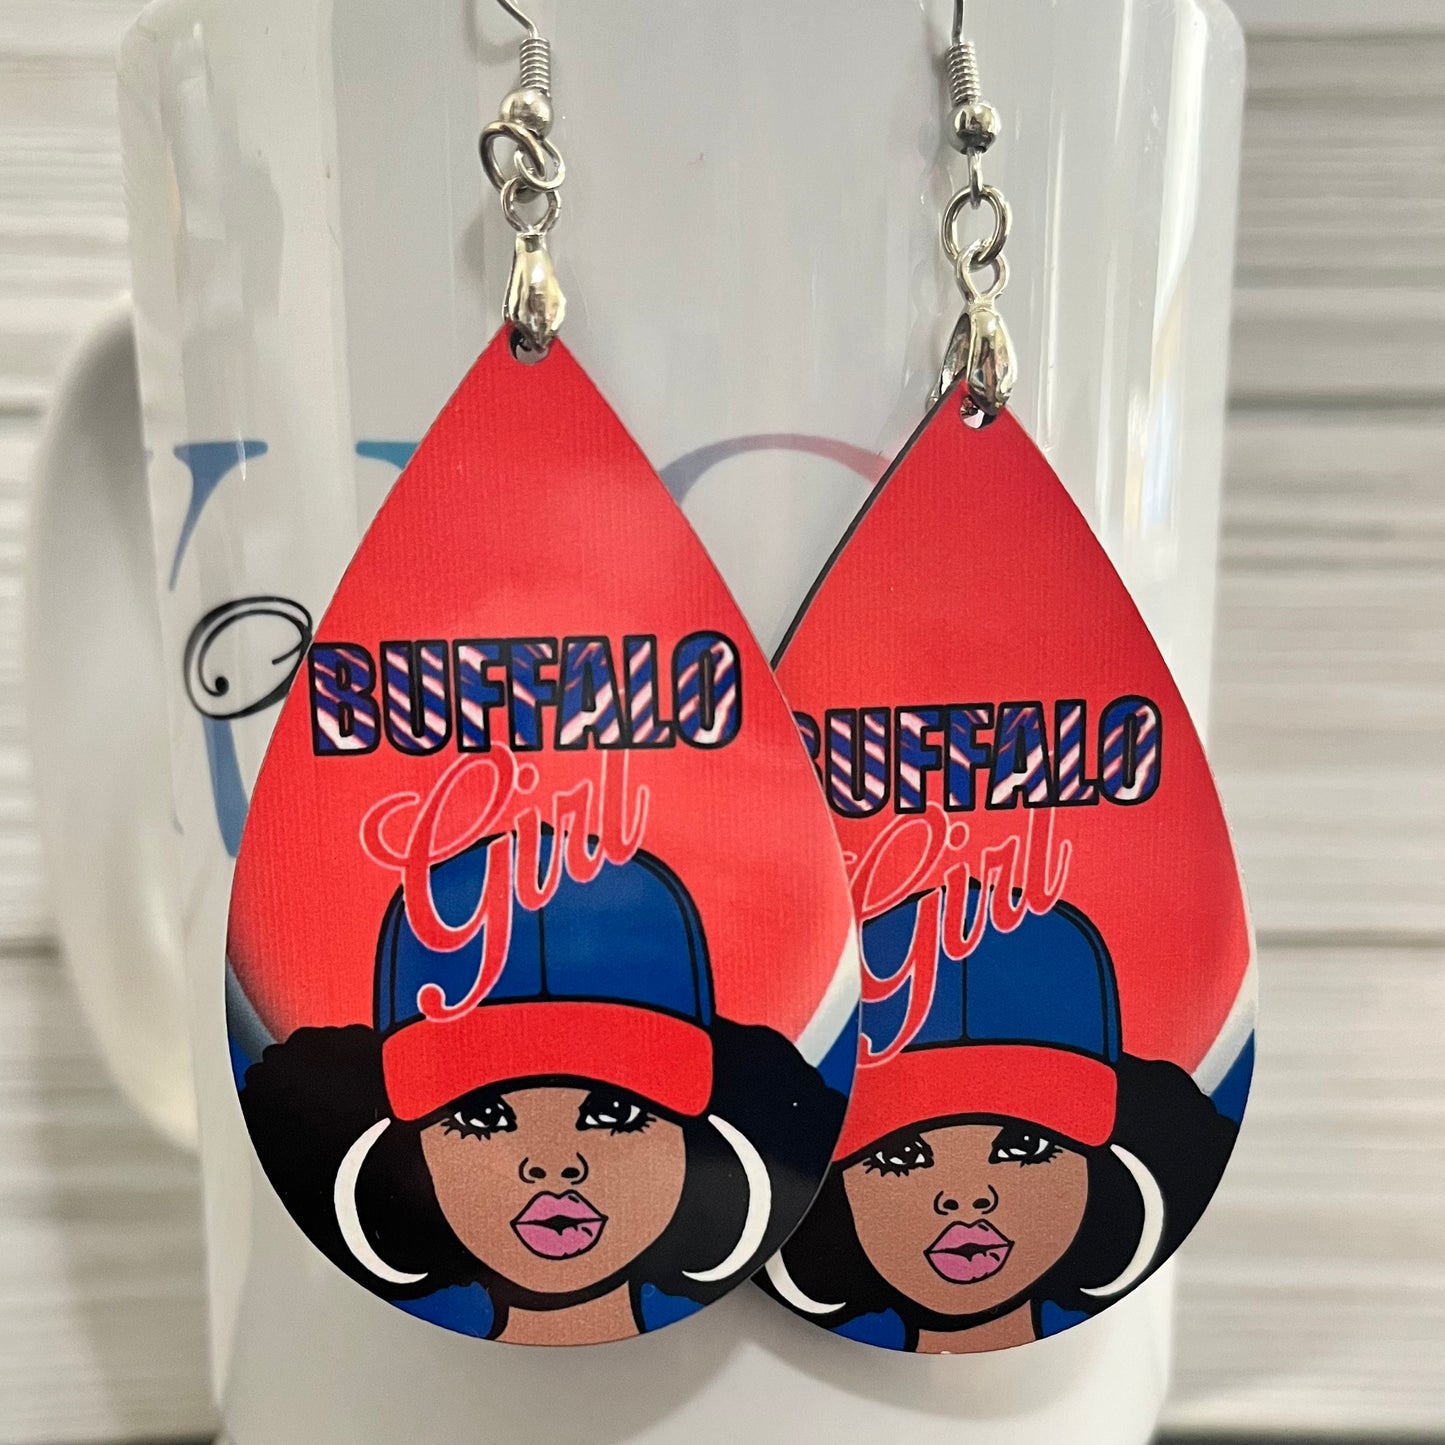 Bills inspired earrings